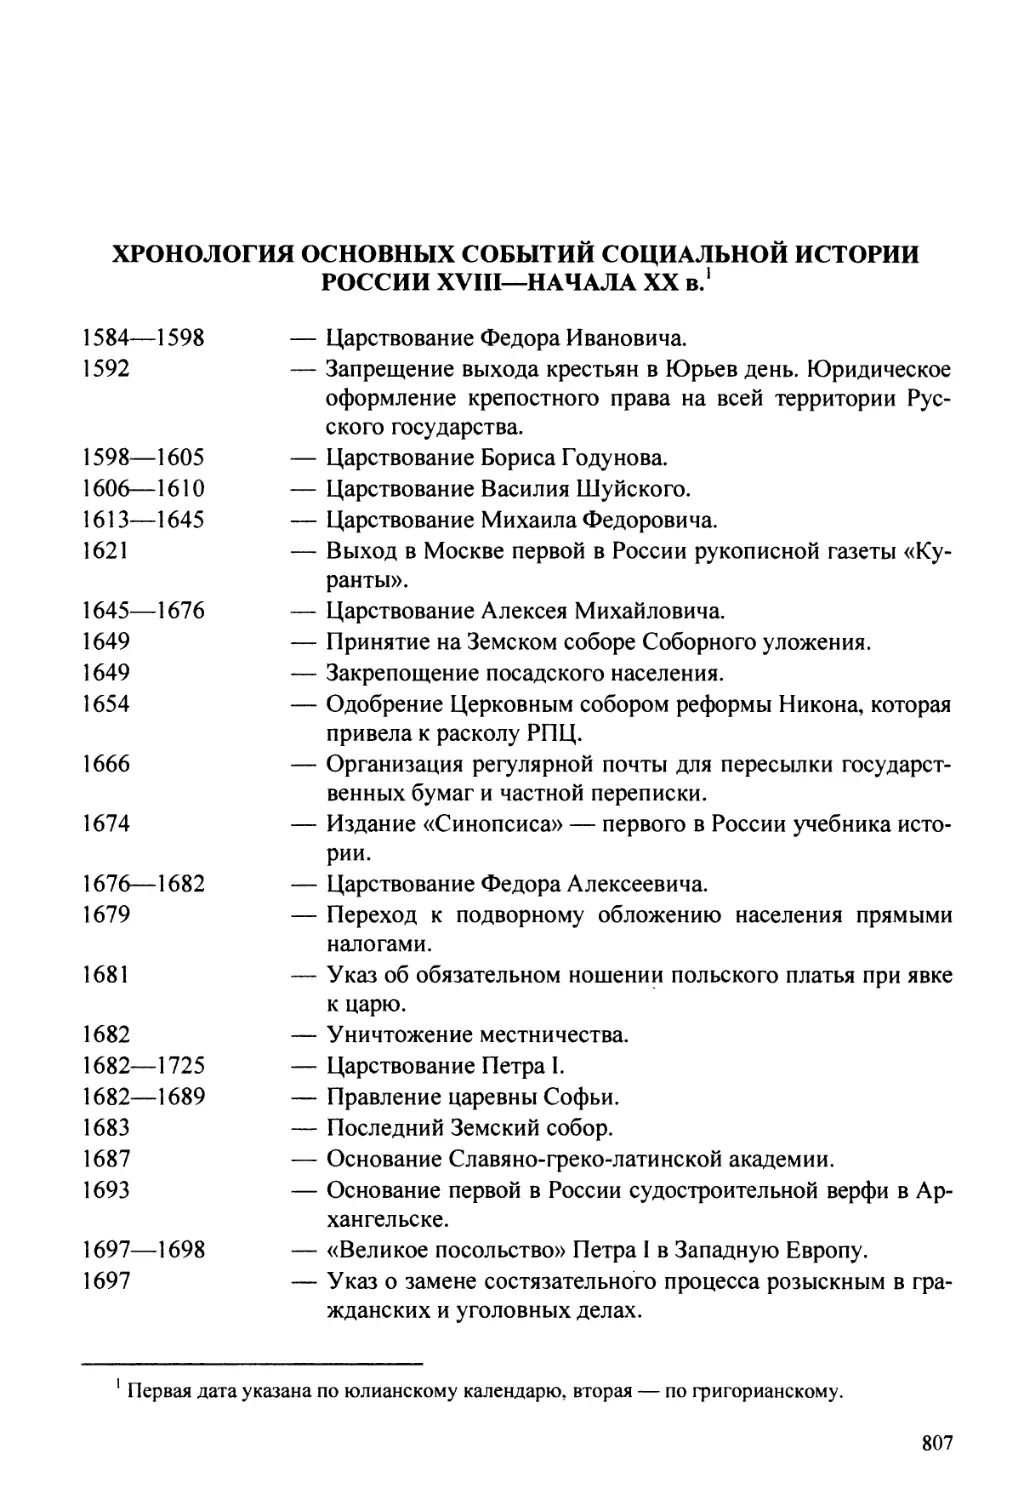 Хронология основных событий социальной истории России XVIII-начаа XX вв.